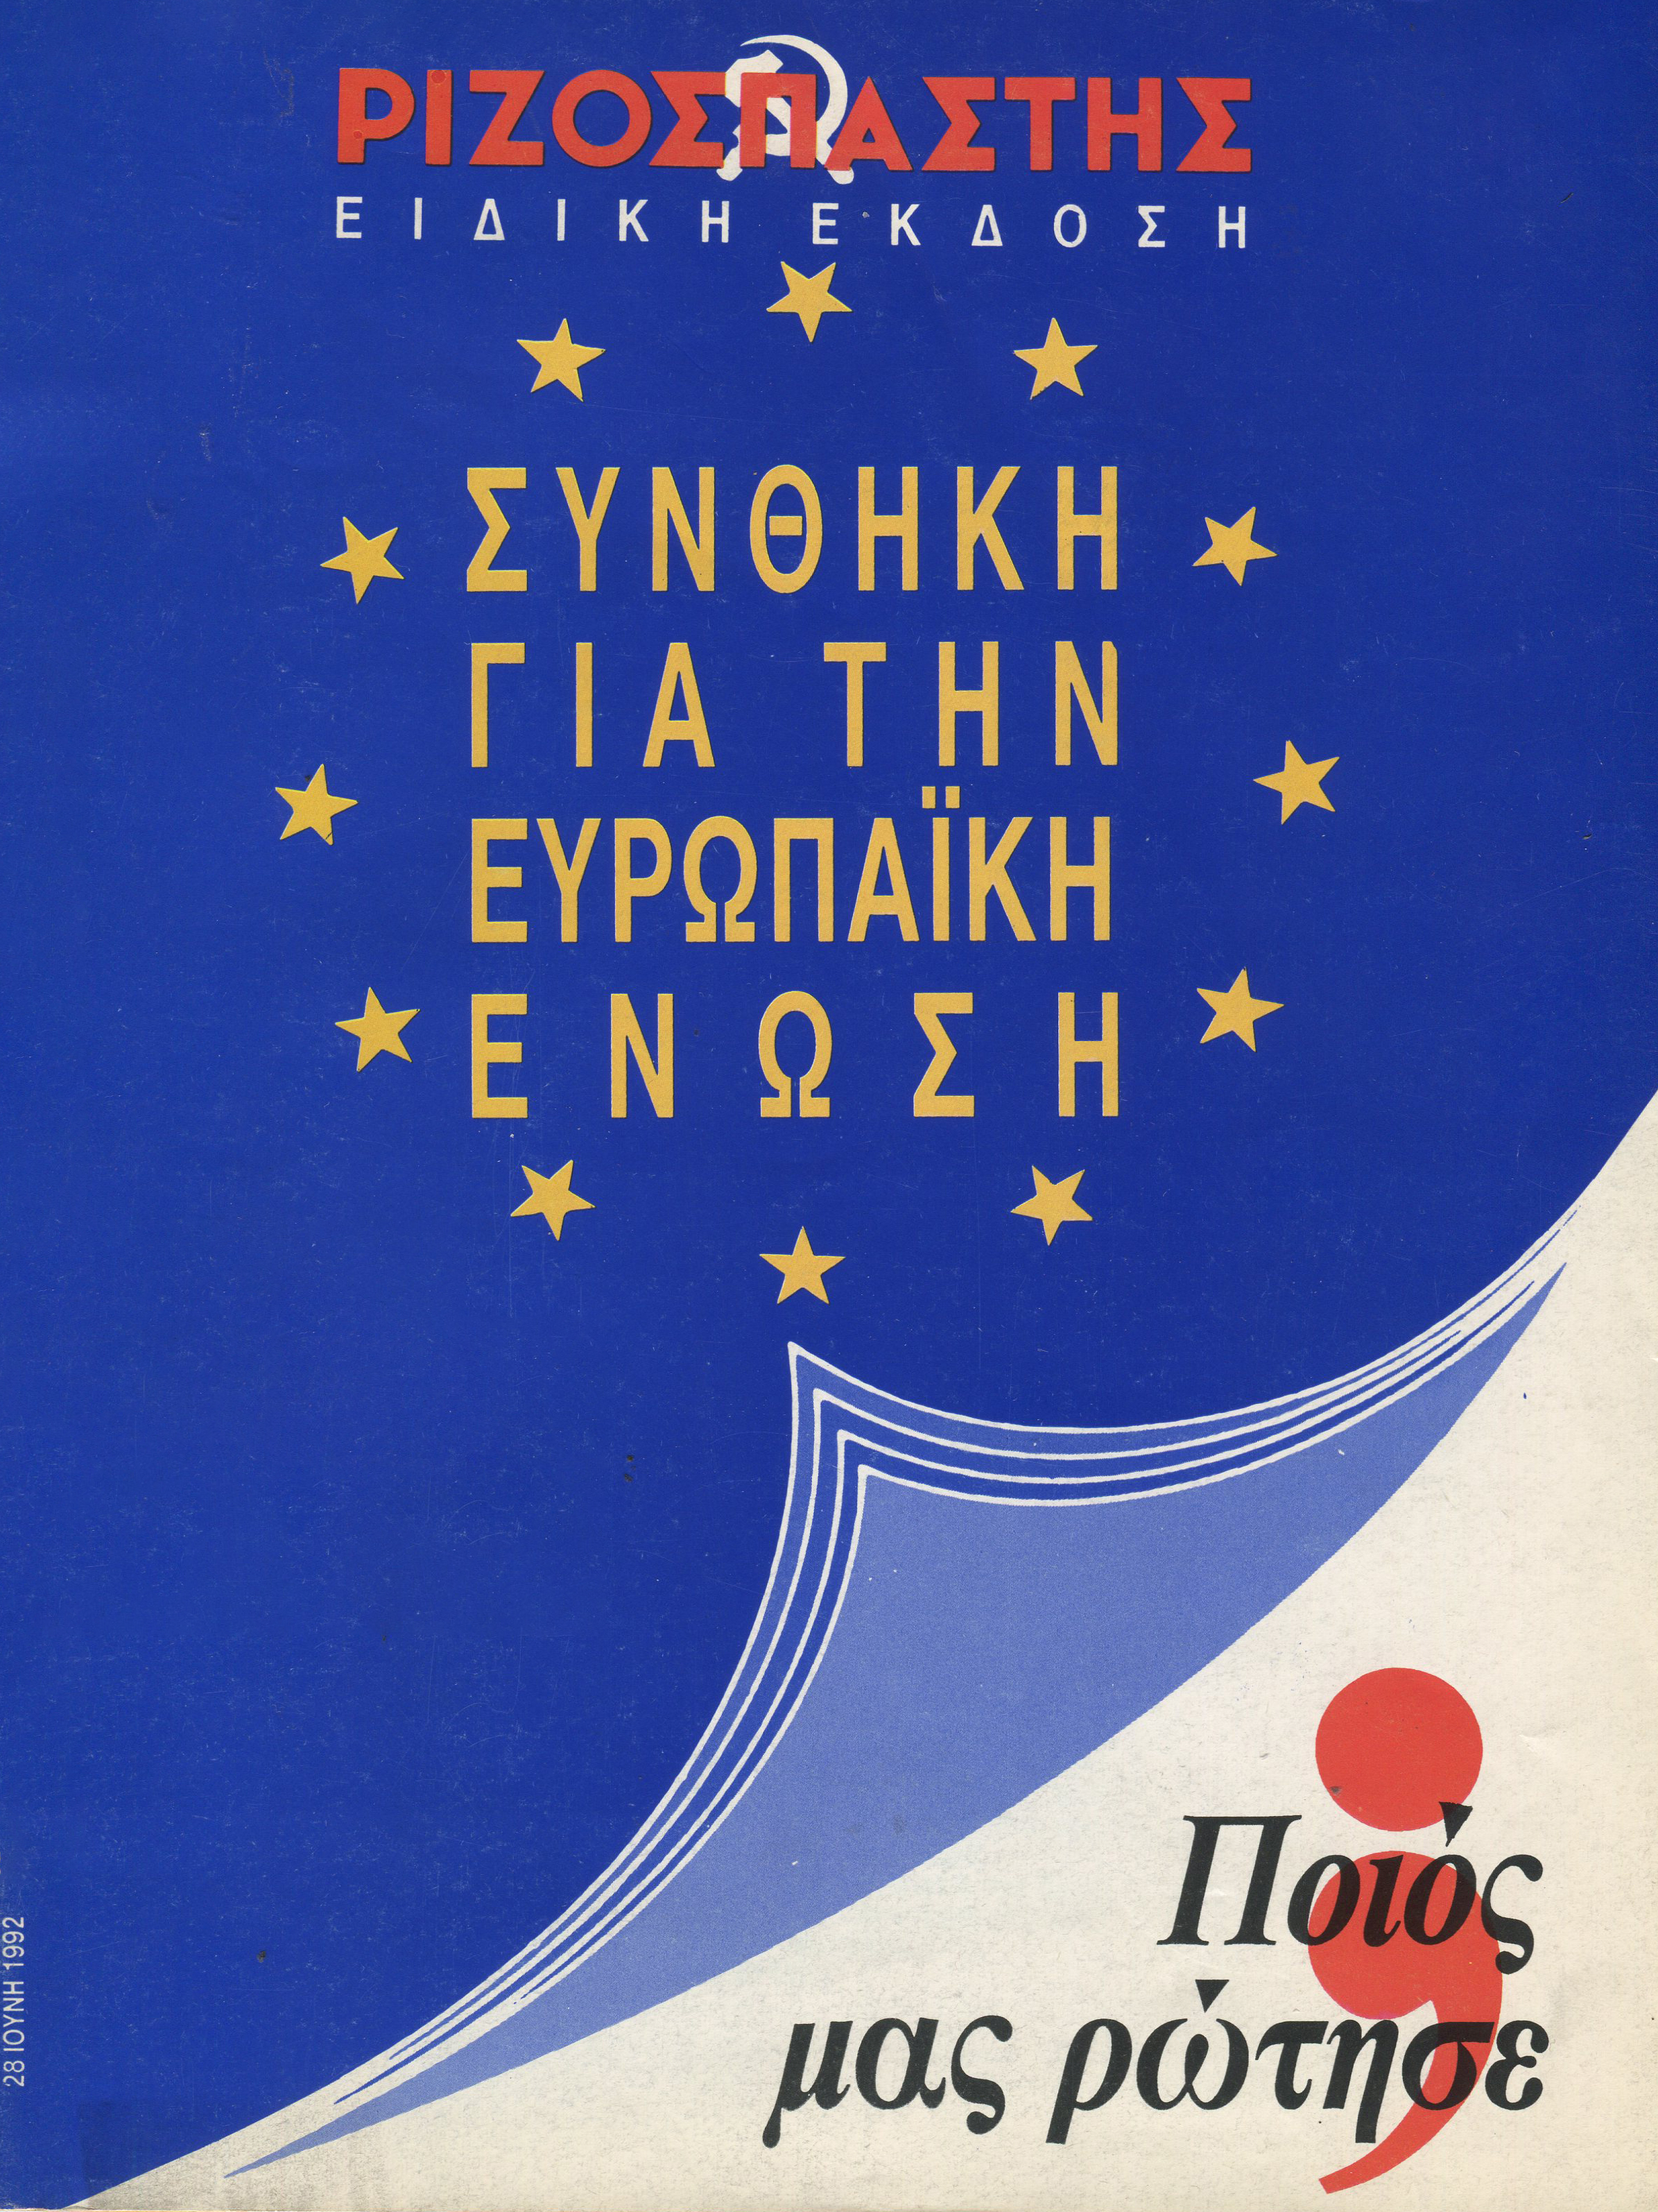 Το εξώφυλλο της ένθετης έκδοσης που κυκλοφόρησε με τον «Ριζοσπάστη» τον Ιούνη του 1992, προκειμένου να ενημερωθεί πλατιά ο λαός για την αντιλαϊκή Συνθήκη του Μάαστριχτ